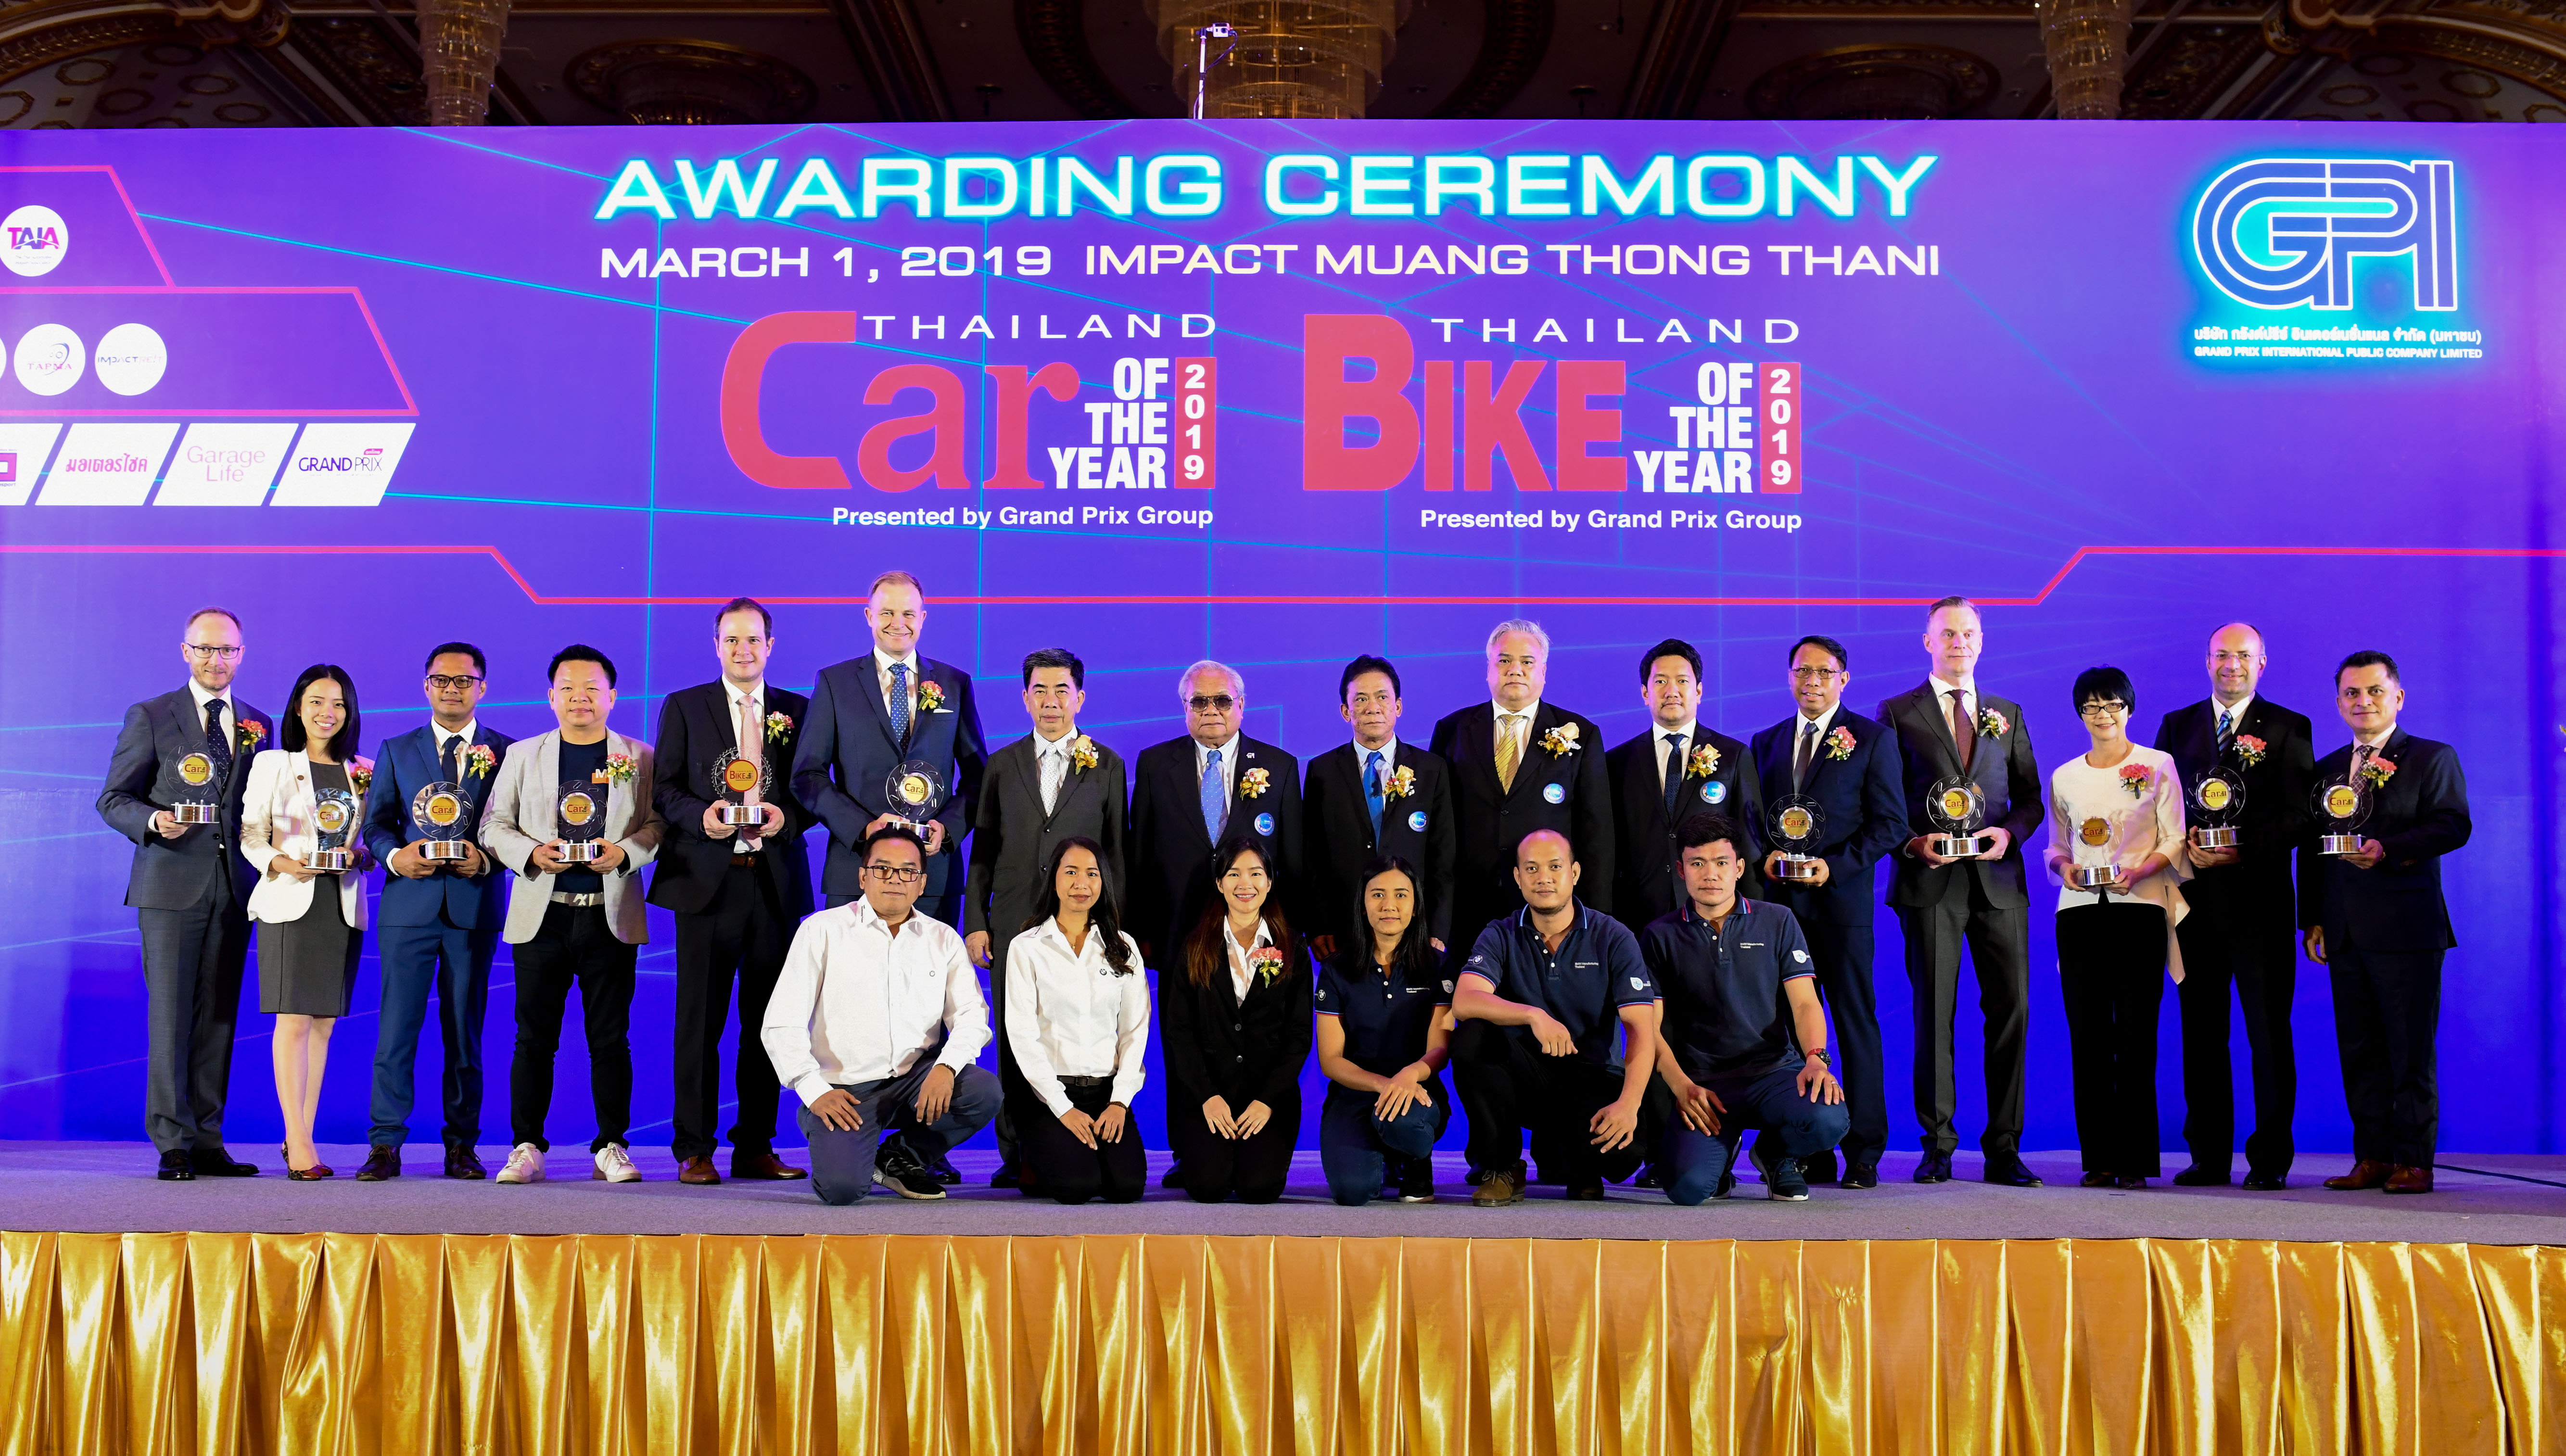 บีเอ็มดับเบิลยู กรุ๊ป ประเทศไทย คว้า 13 รางวัลจากเวที Car & Bike of the Year 2019 ตอกย้ำความสำเร็จแห่งการเป็นผู้นำด้านนวัตกรรมยานยนต์